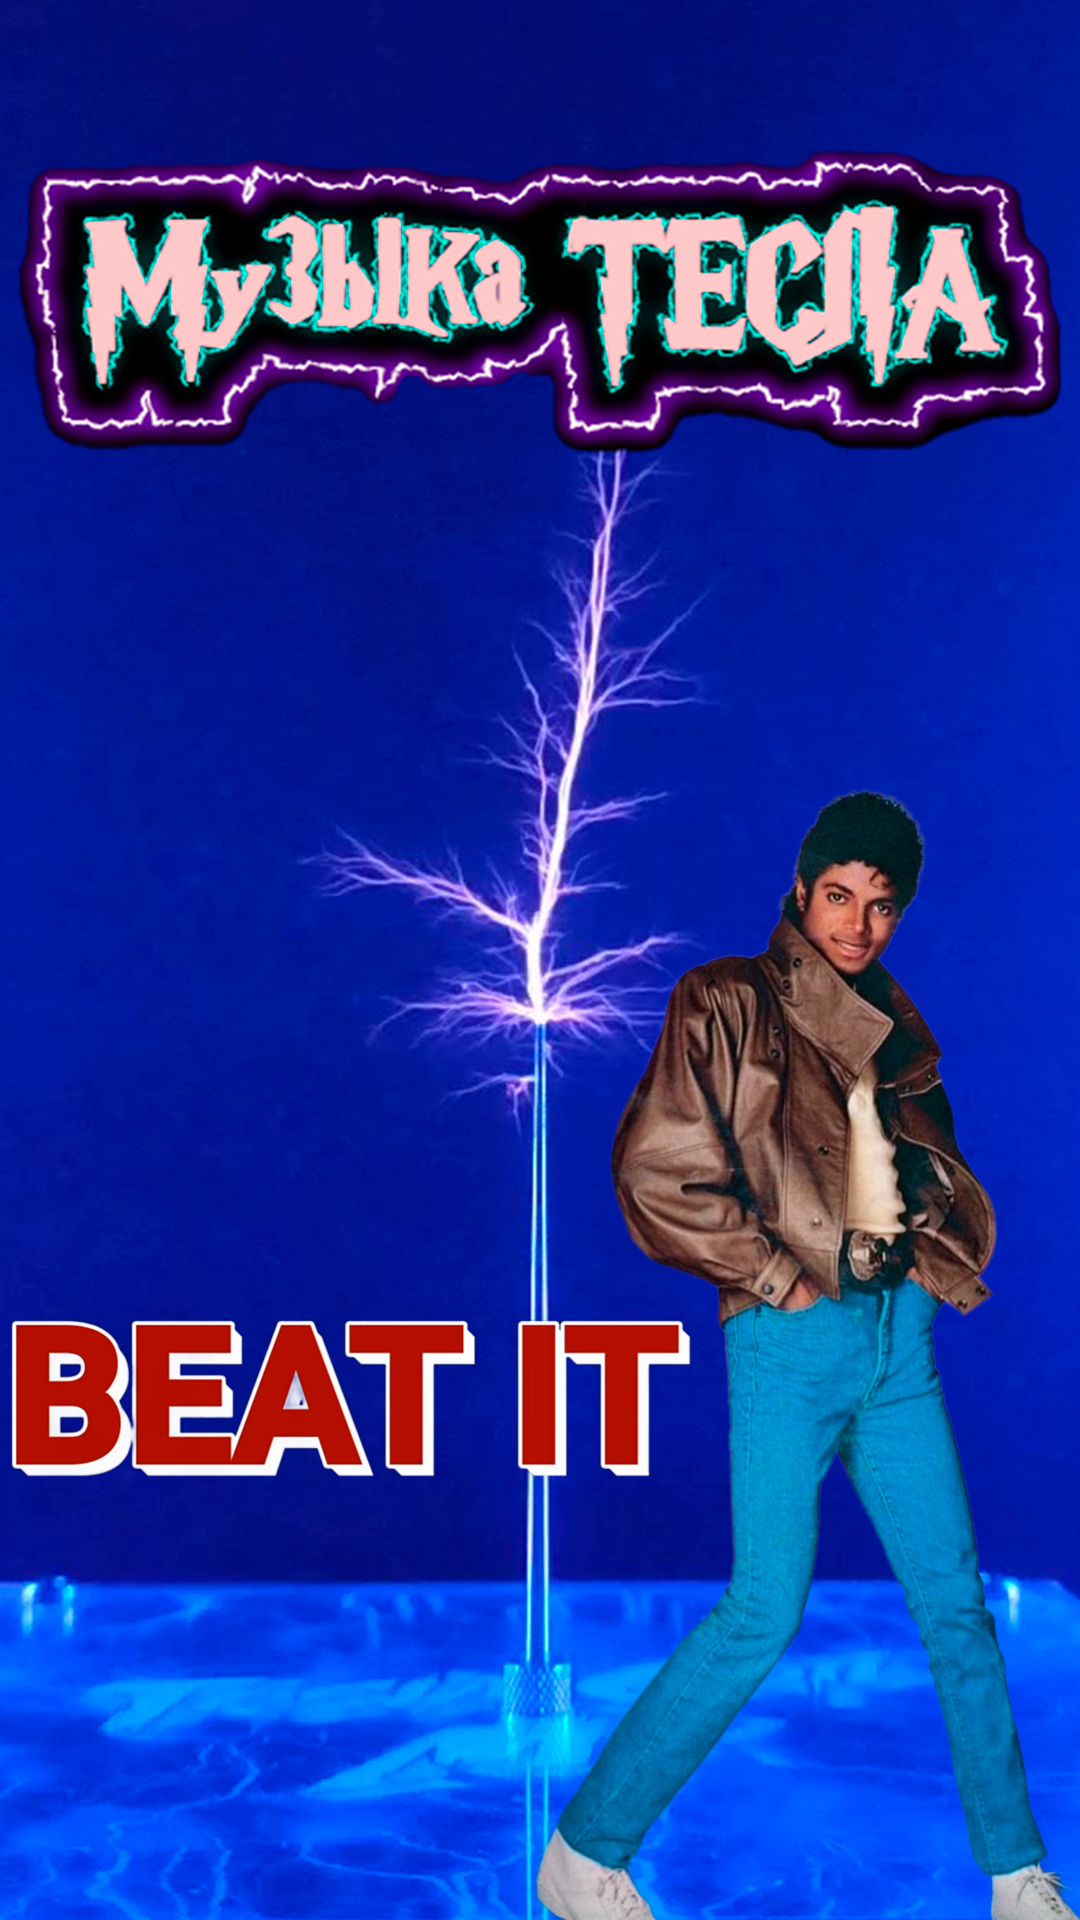 Michael Jackson - Beat It Tesla Coil Mix #музыкатесла